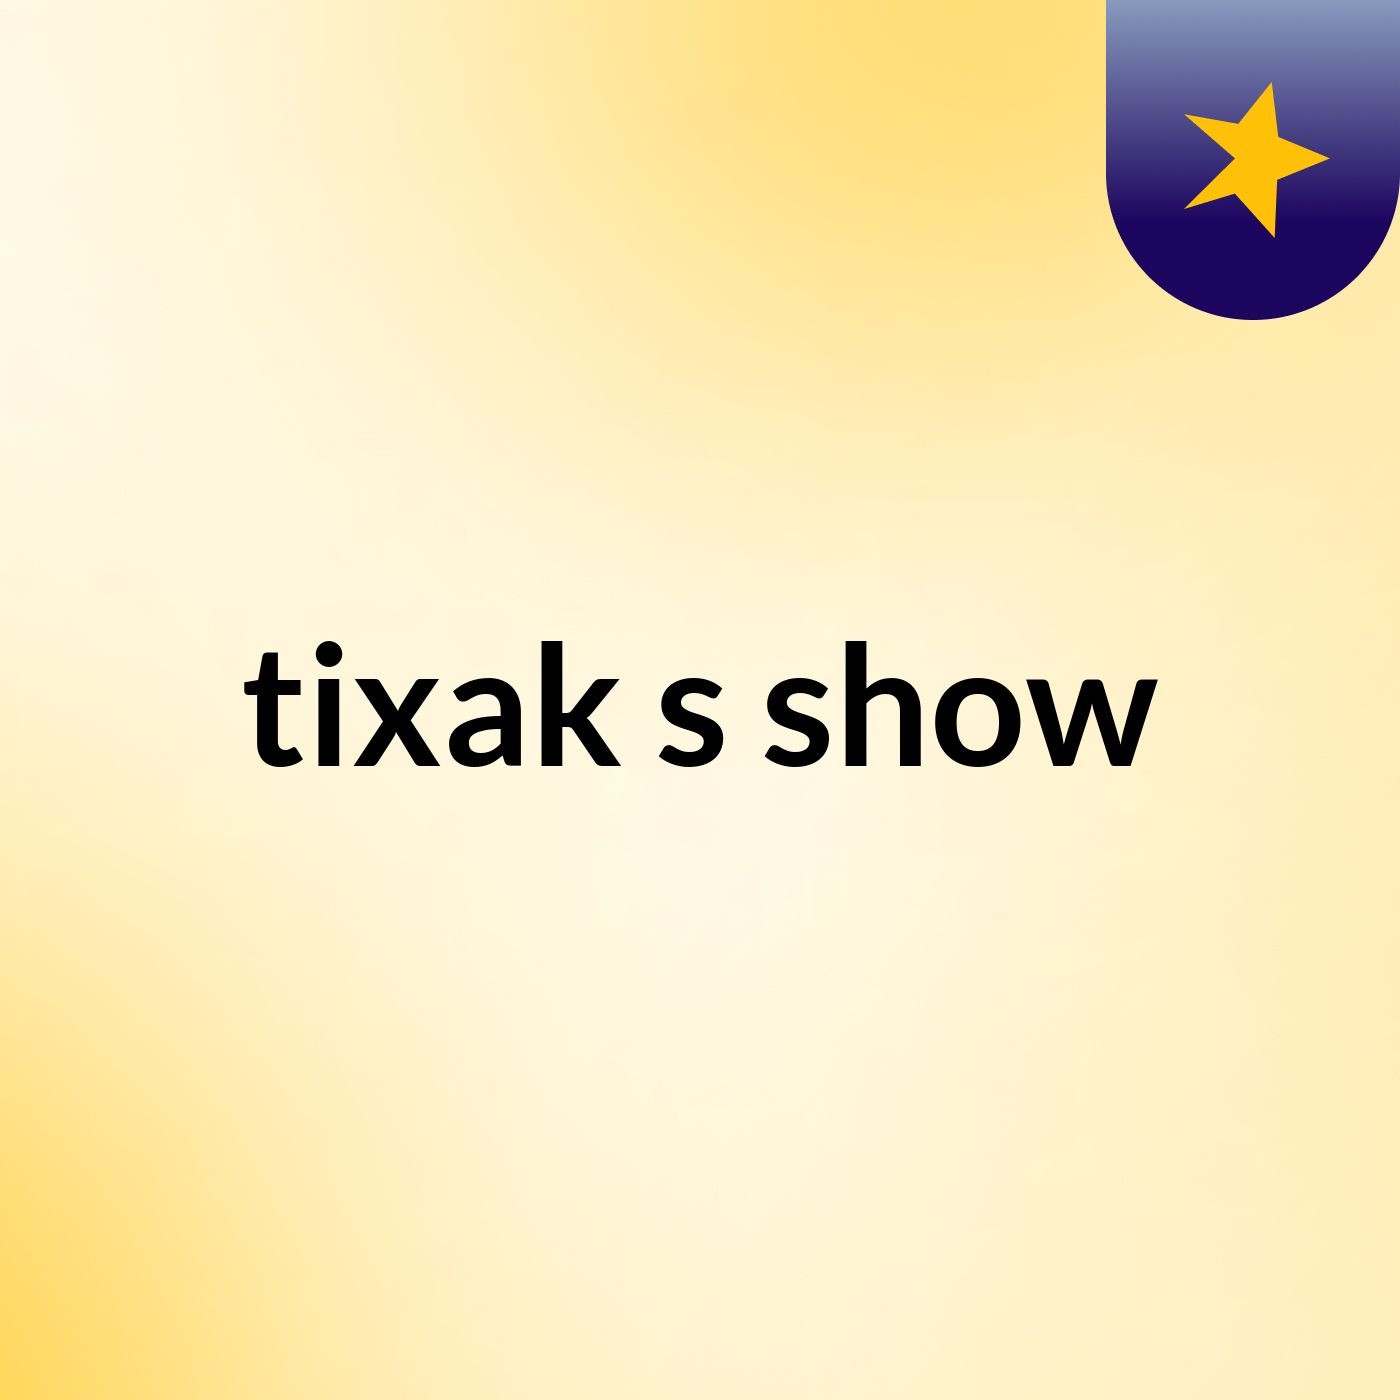 tixak's show